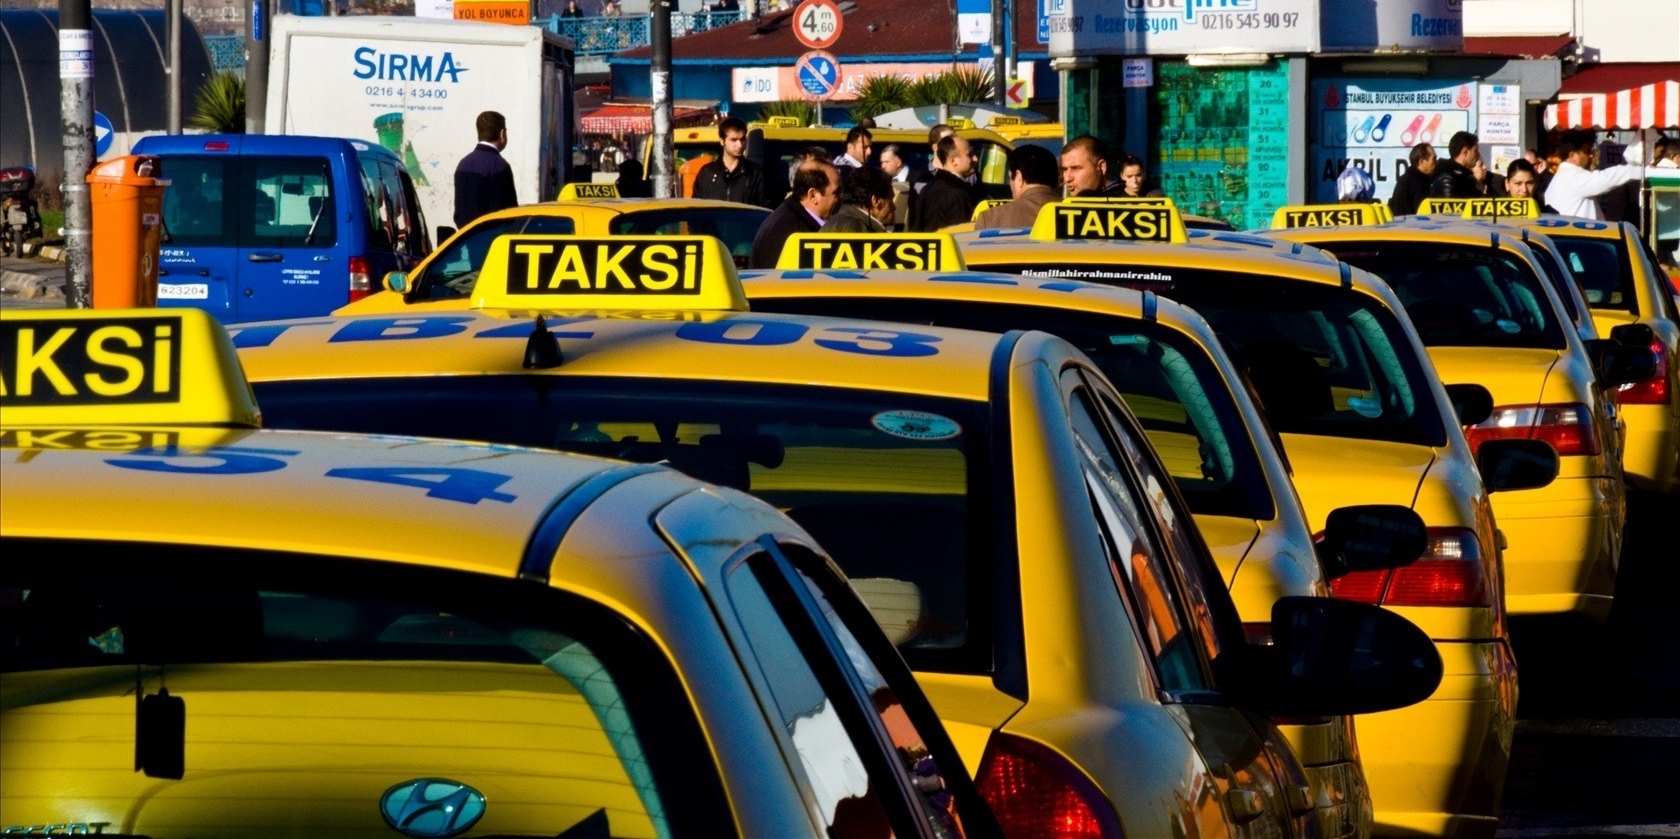 İstanbul’da taksi krizi büyüyor!